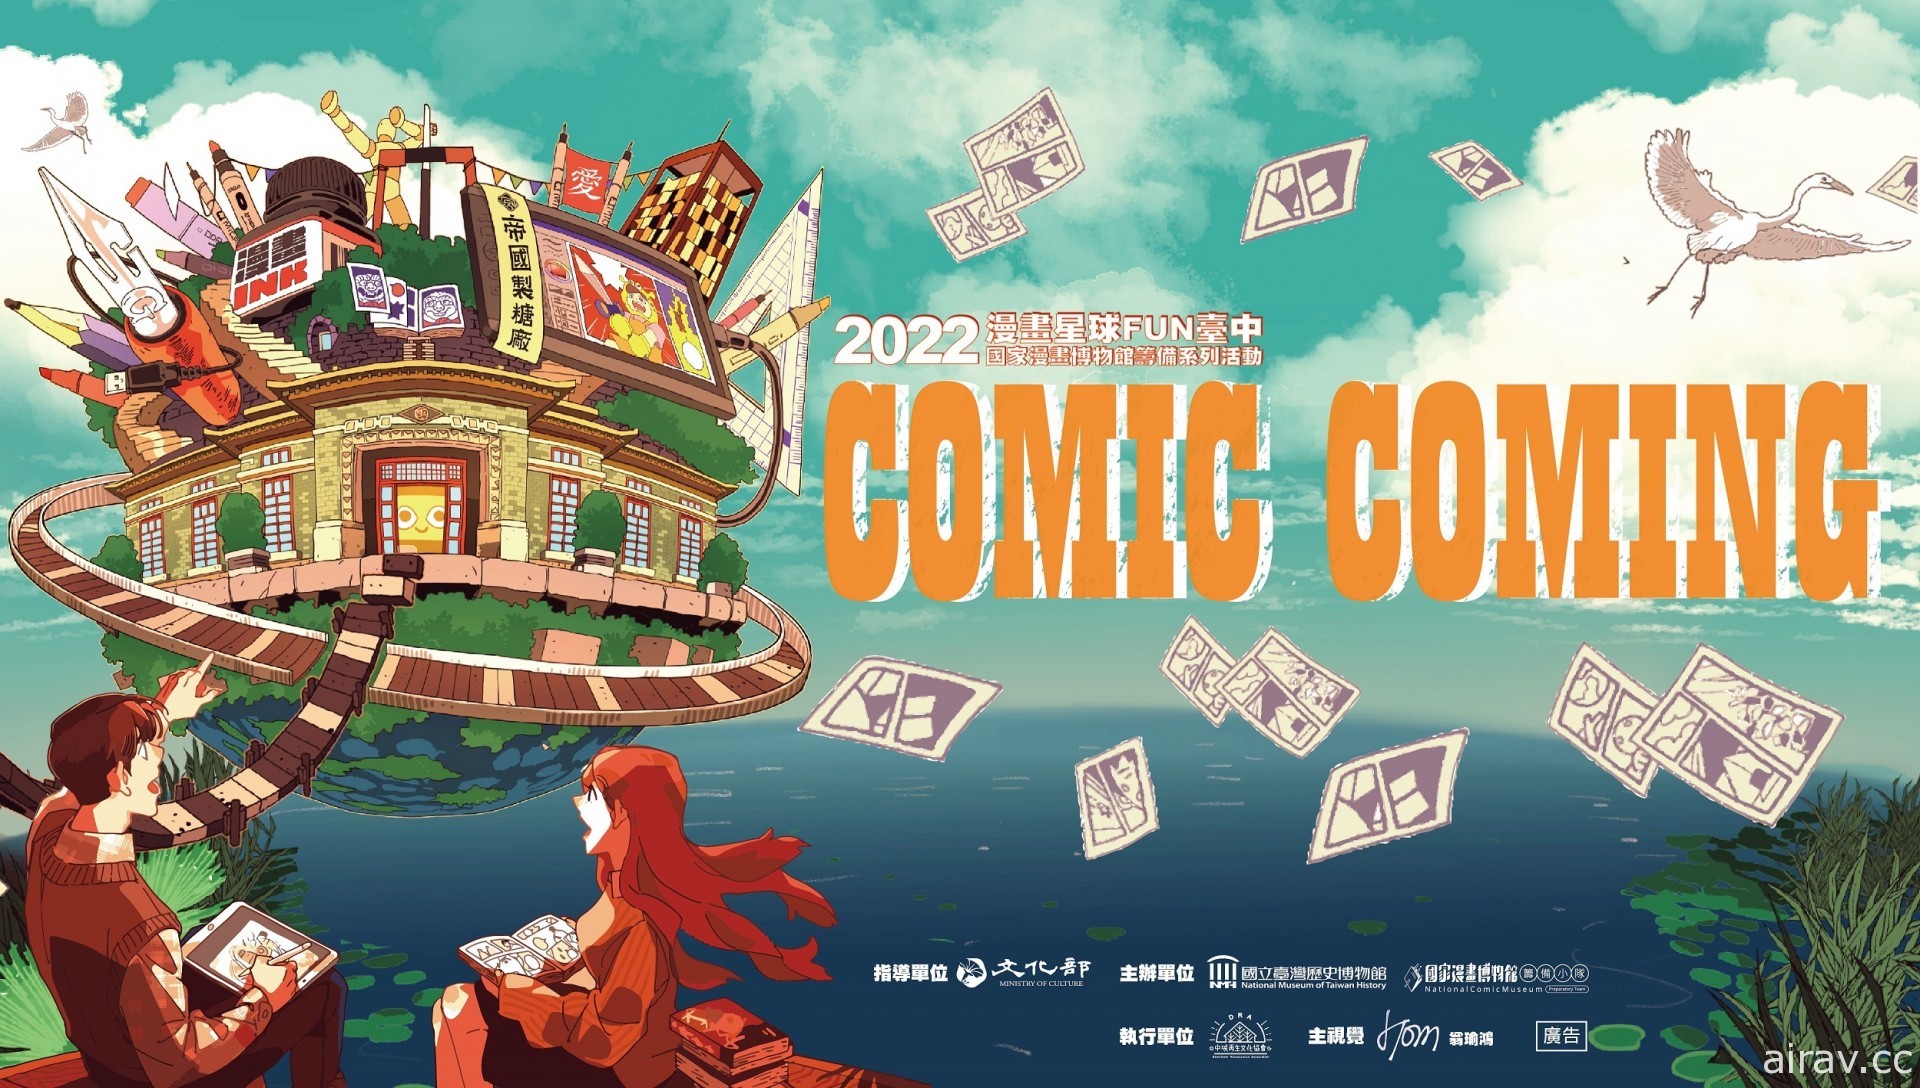 國家漫畫博物館籌備系列活動「Comic Coming 漫畫星球 FUN 臺中」4 月下旬開跑